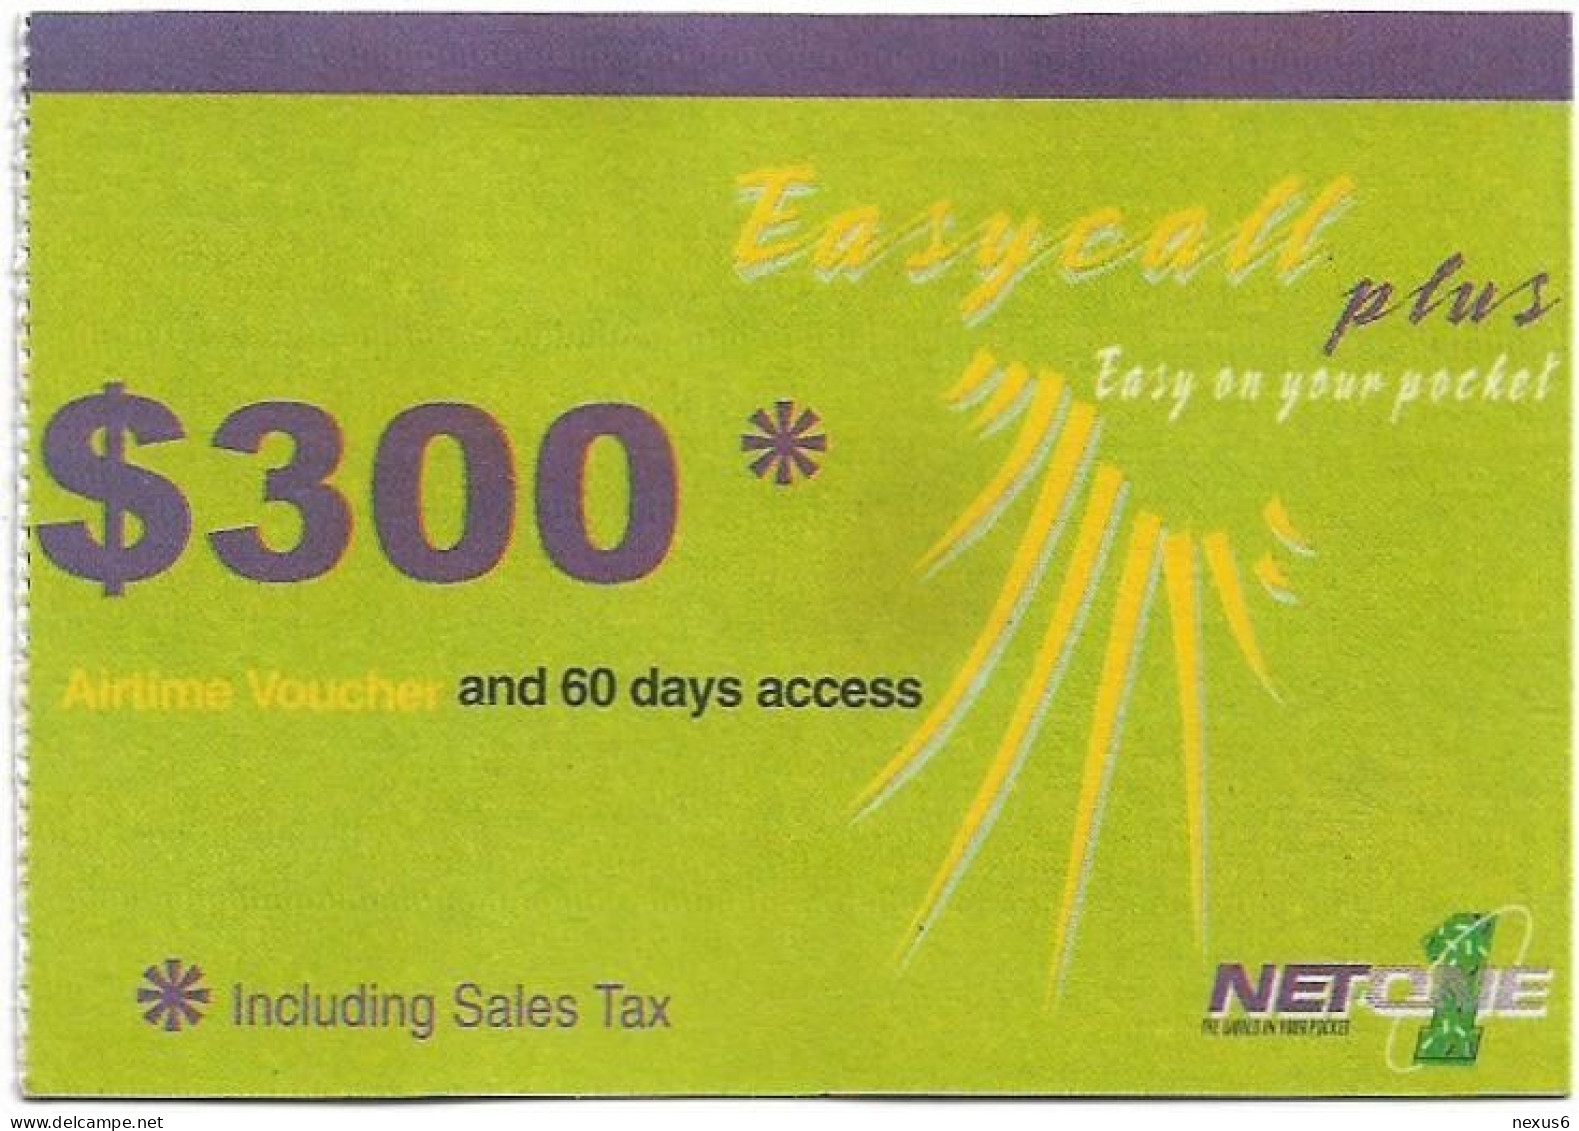 Zimbabwe - NET1ONE - EasyCall Plus Airtime, Big Size GSM Refill 300$, Used - Zimbabwe